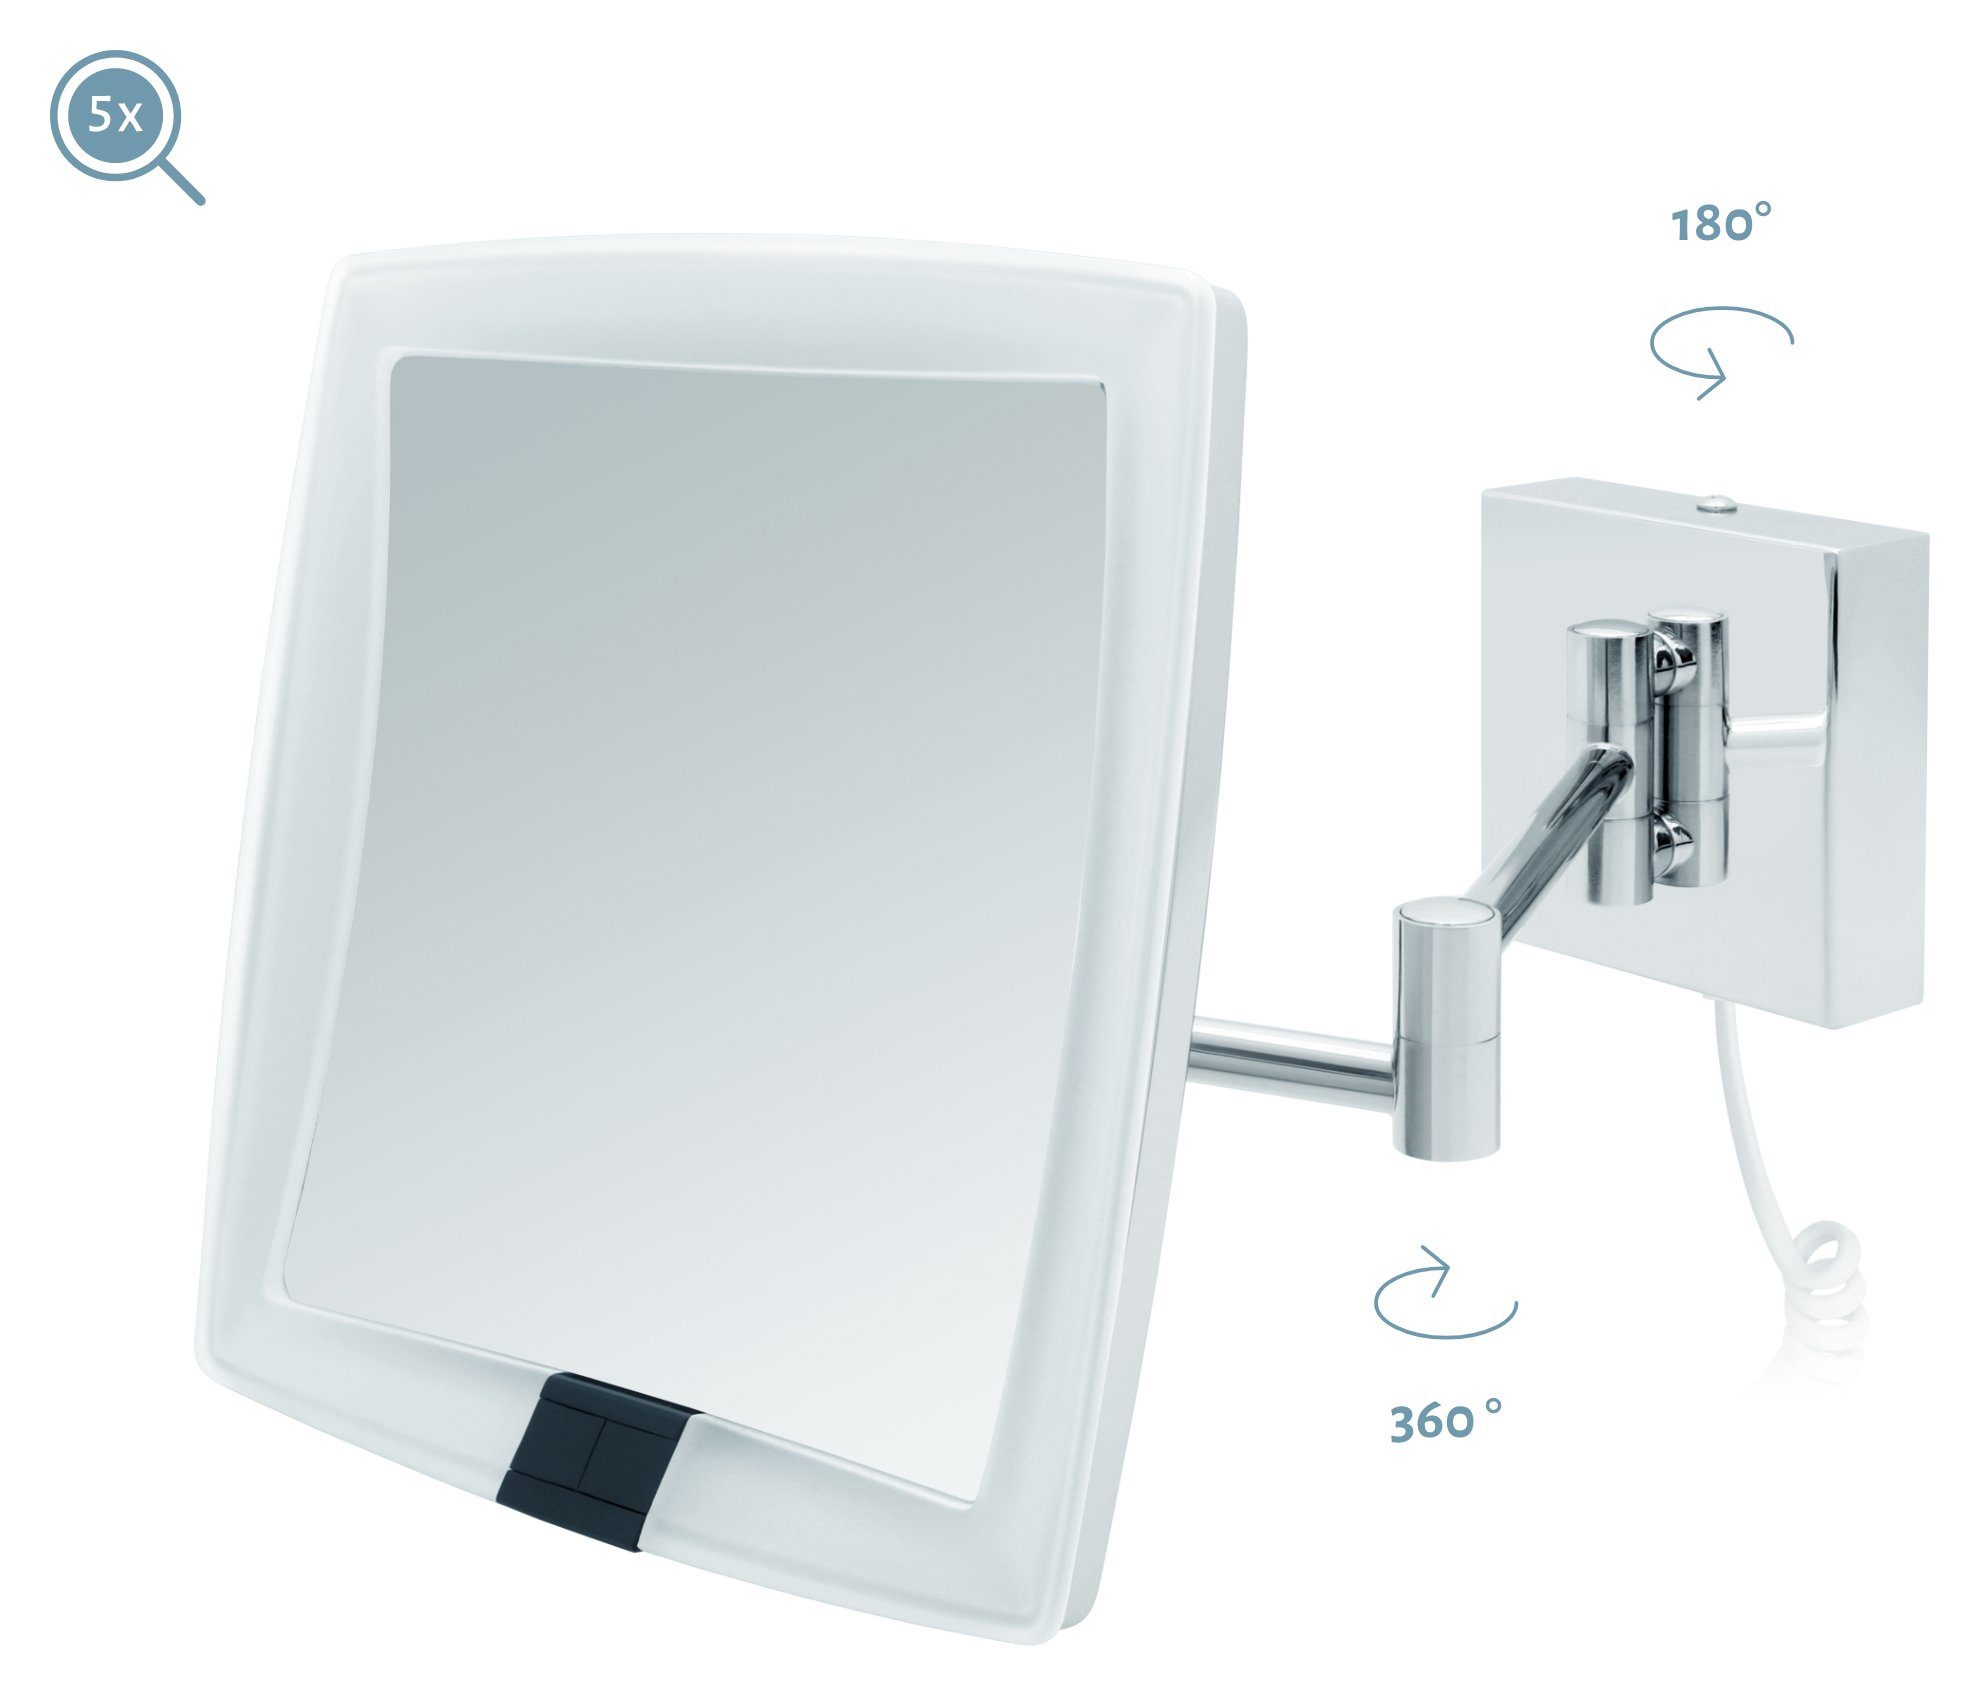 Sensor Vergrößerungsspiegel Kosmetikspiegel Kabel LED 5fach weißes Kosmetikspiegel Verona, Libaro